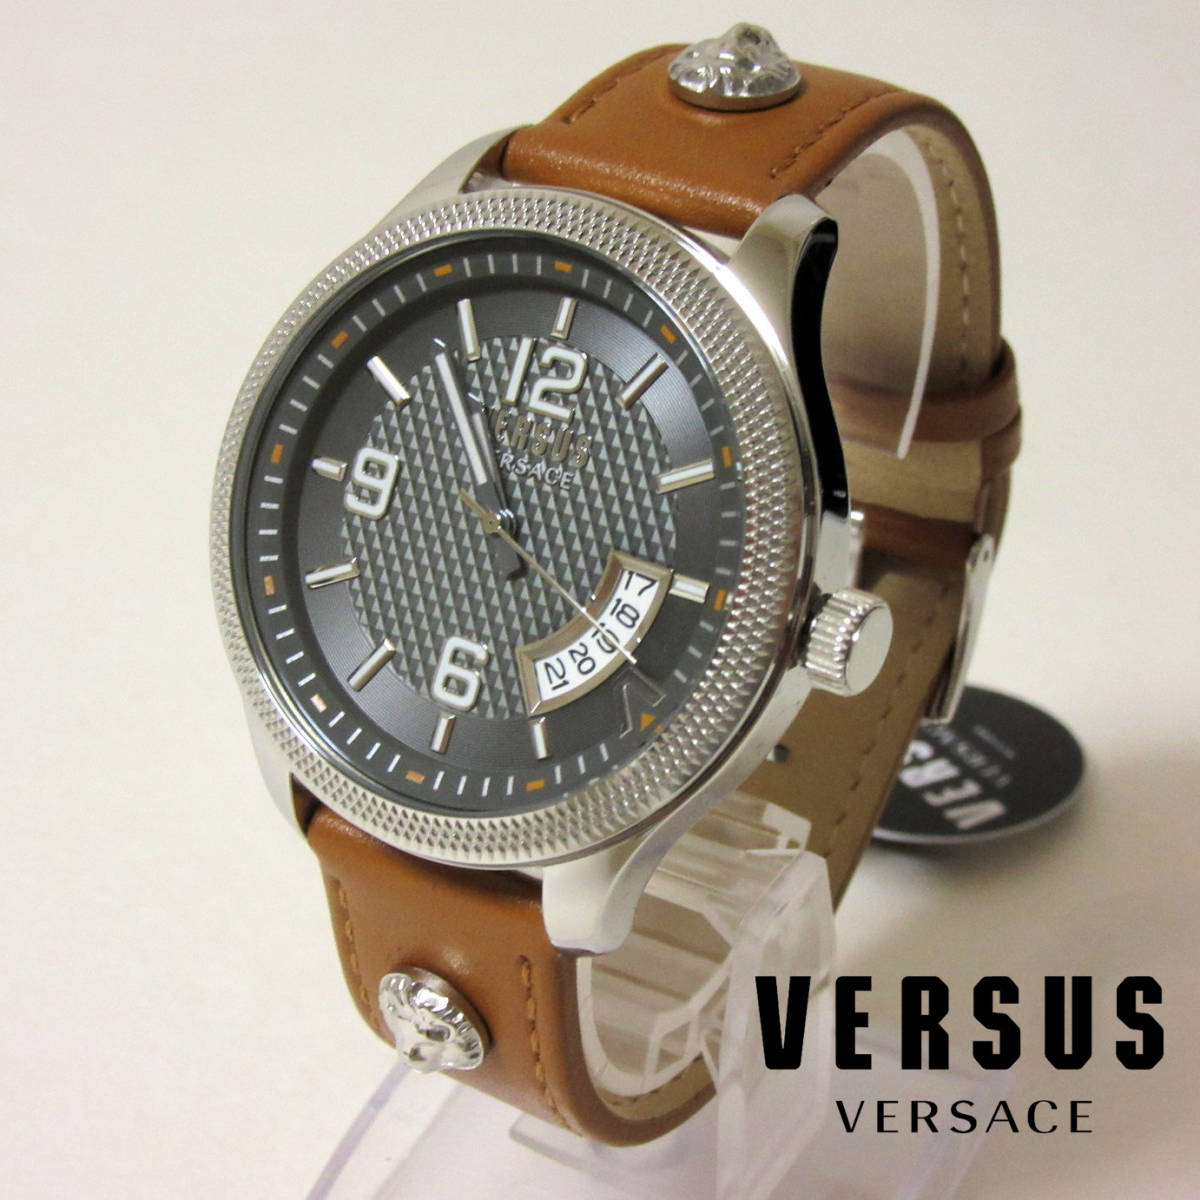 全新盒装 VERSUS VERSACE 3 指针日期扭索男士手表 手工皮革皮带 棕色 44 毫米, 品牌手表, 一条线, 范思哲